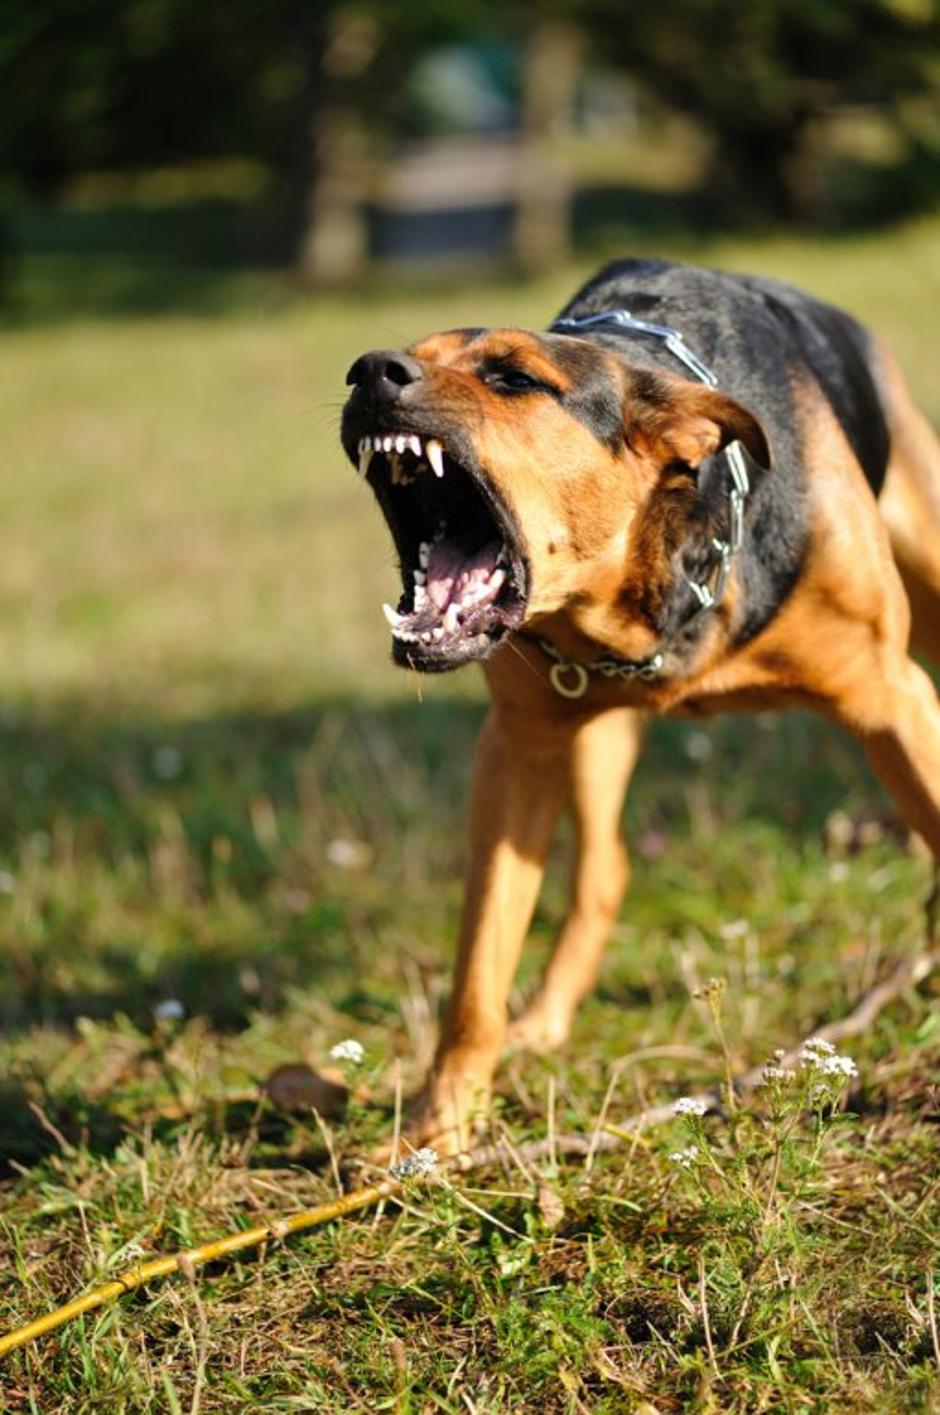 nevaren jezni pes | Avtor: Shutterstock